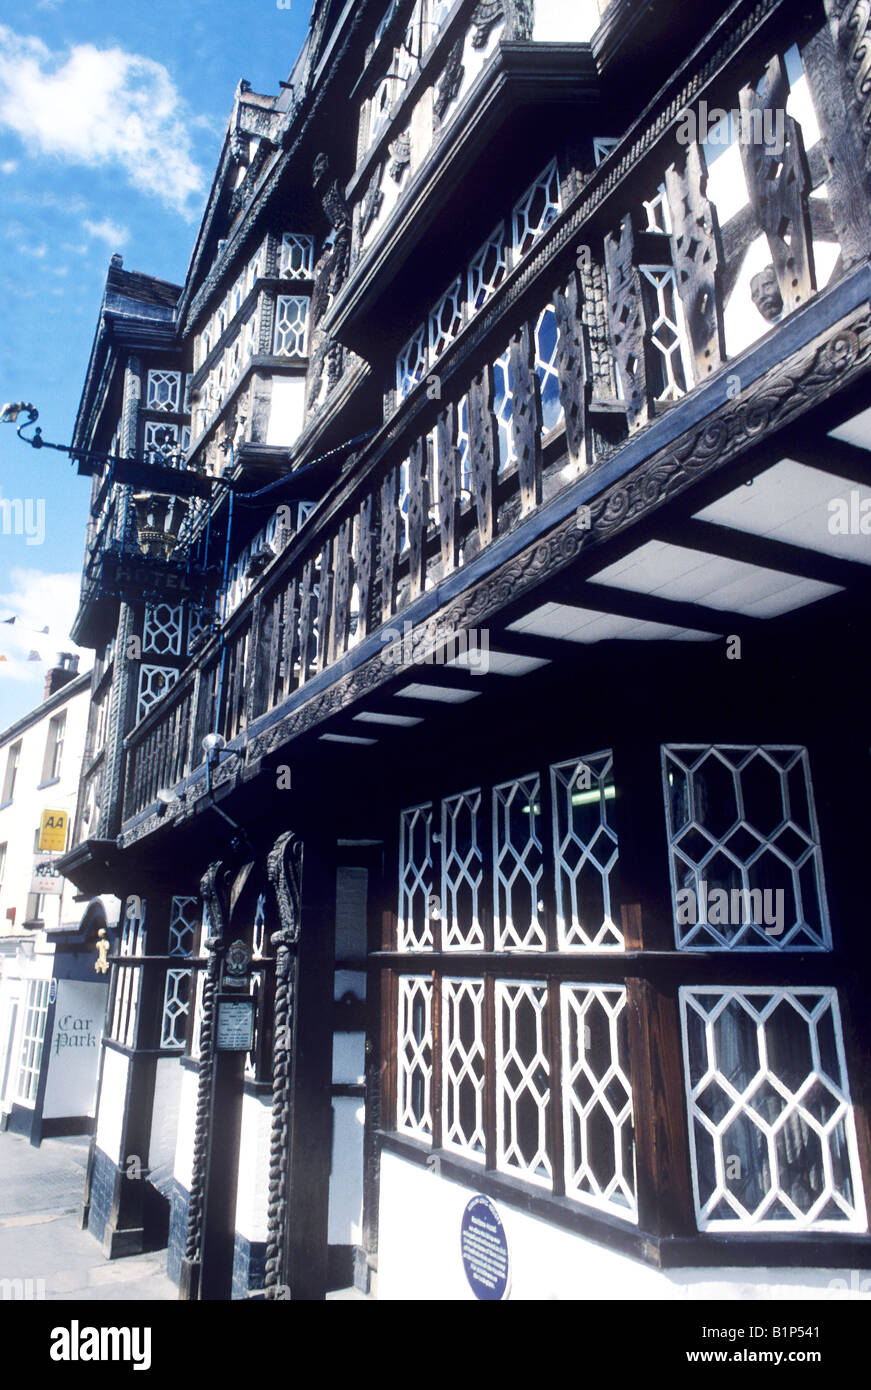 Die Federn Hotel Ludlow Shropshire schwarz-weiß Fachwerkhaus Gebäude Gips Bleiglasfenster England UK Stockfoto